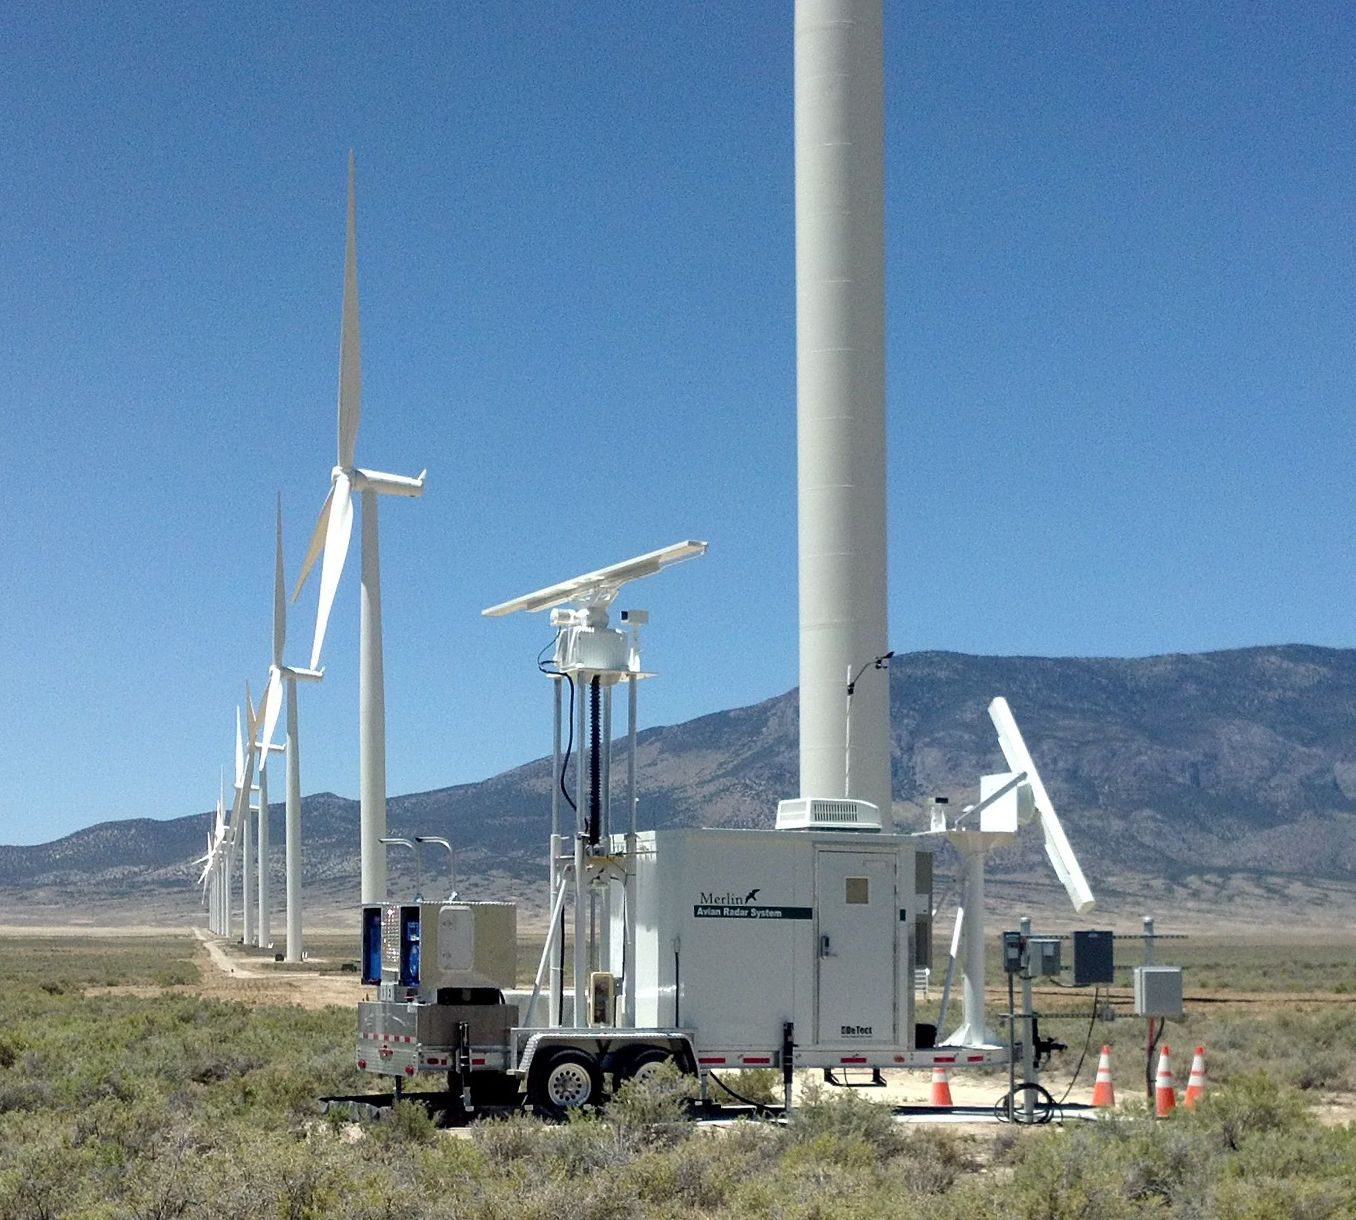 MERLIN Avian Radar Technology Installed on a Wind Farm